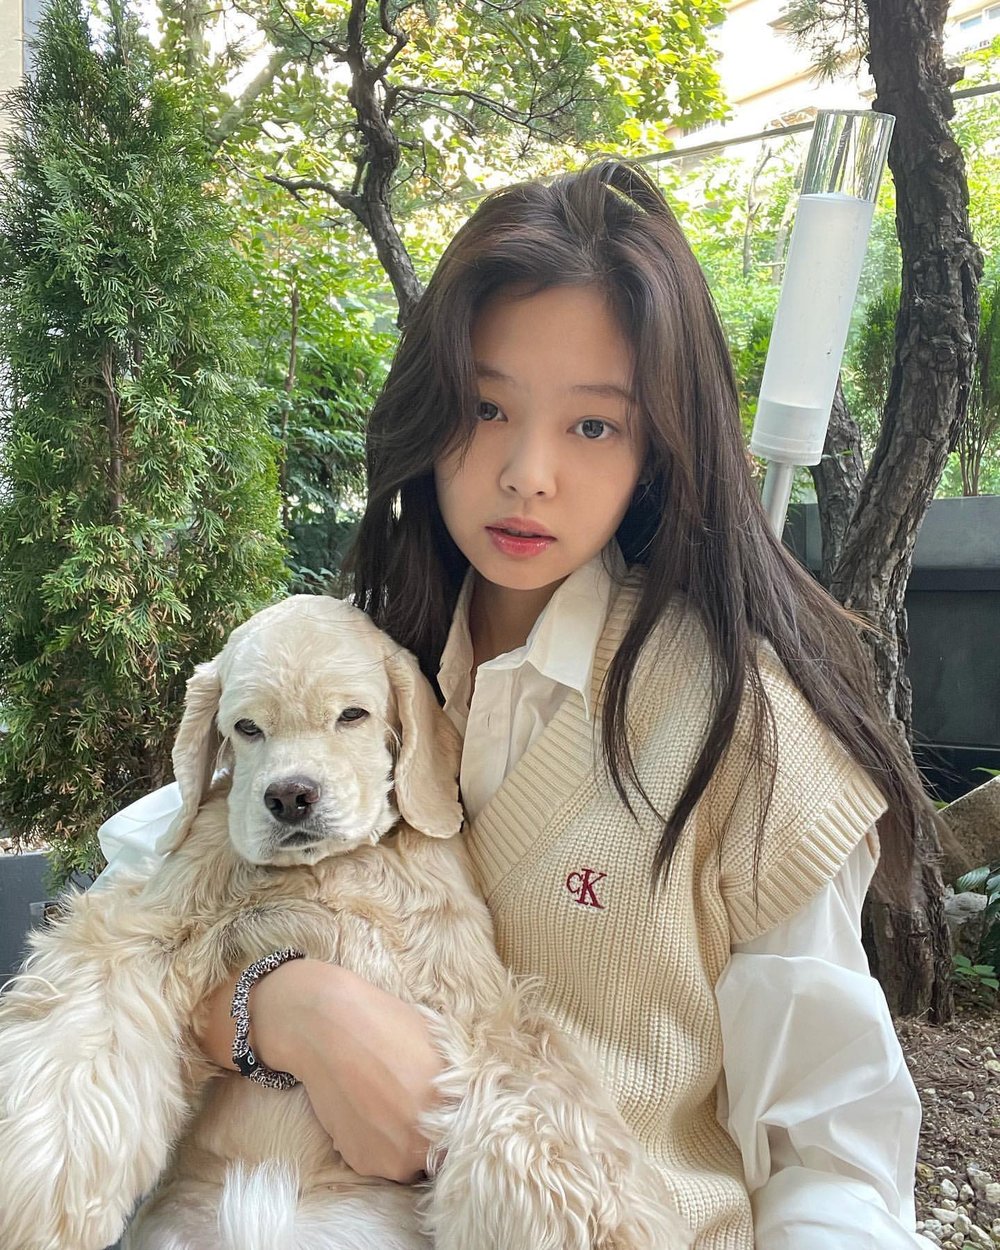  
Niềm mong ước của Jennie liên quan đến tình yêu dành cho động vật. (Ảnh: Instagram jennierubyjane)